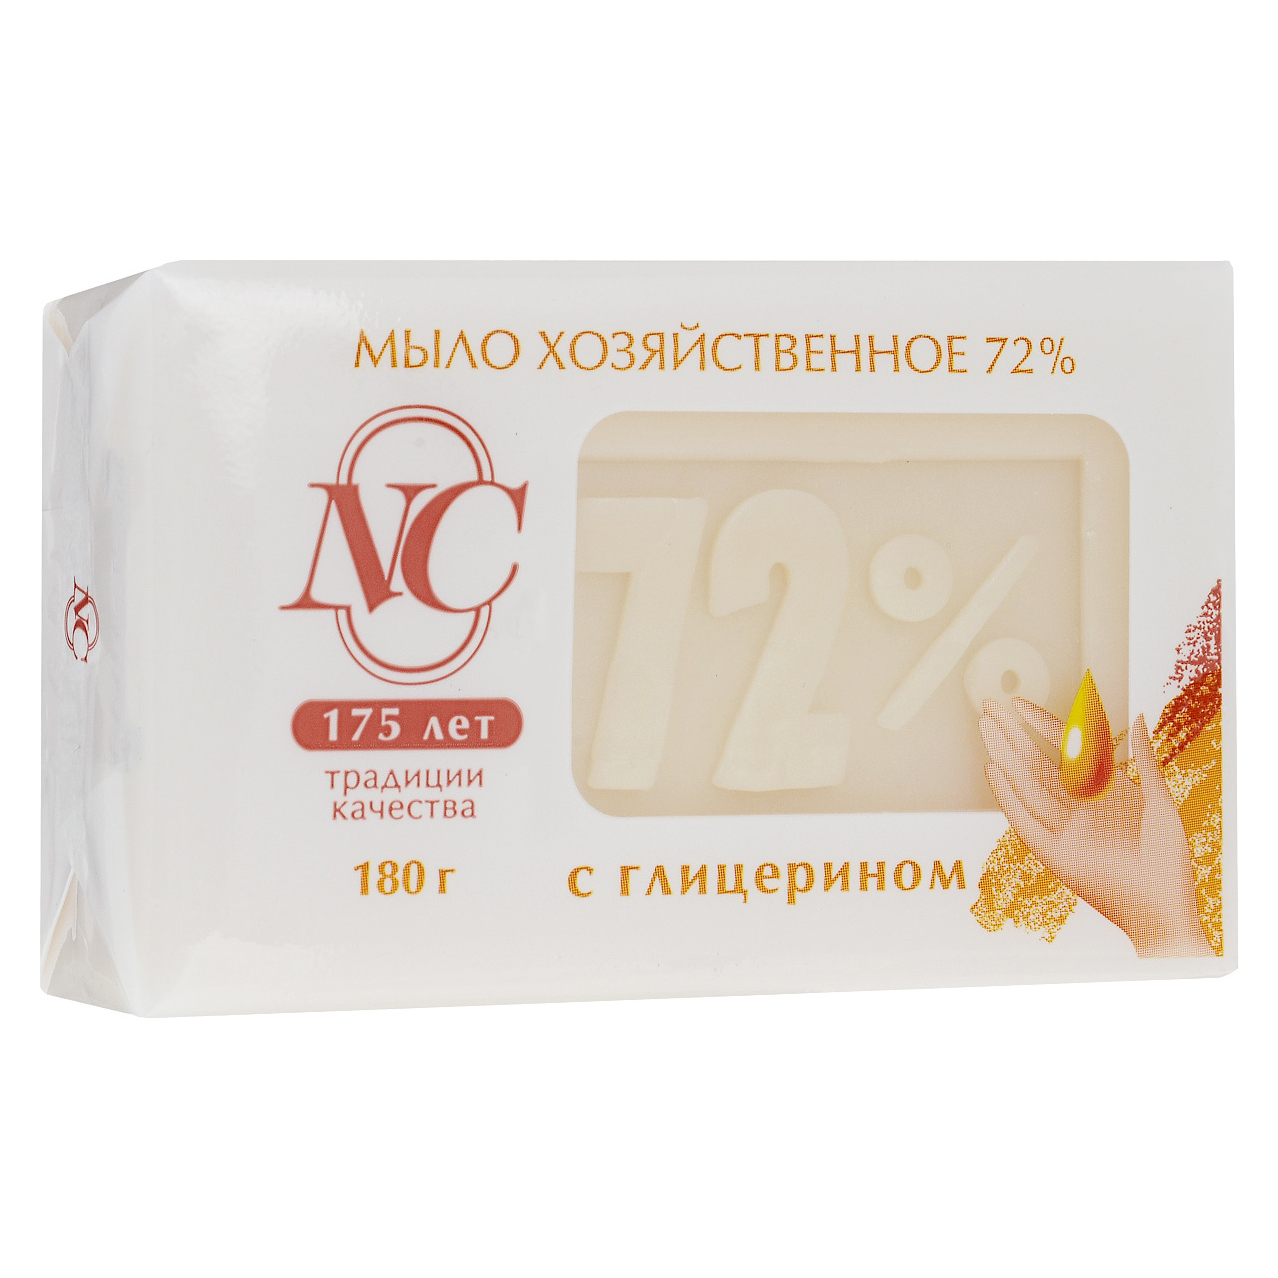 Традиционное хозяйственное мыло Невская косметика 72% с глицерином 180 г традиционное хозяйственное мыло невская косметика 72% с глицерином 180 г